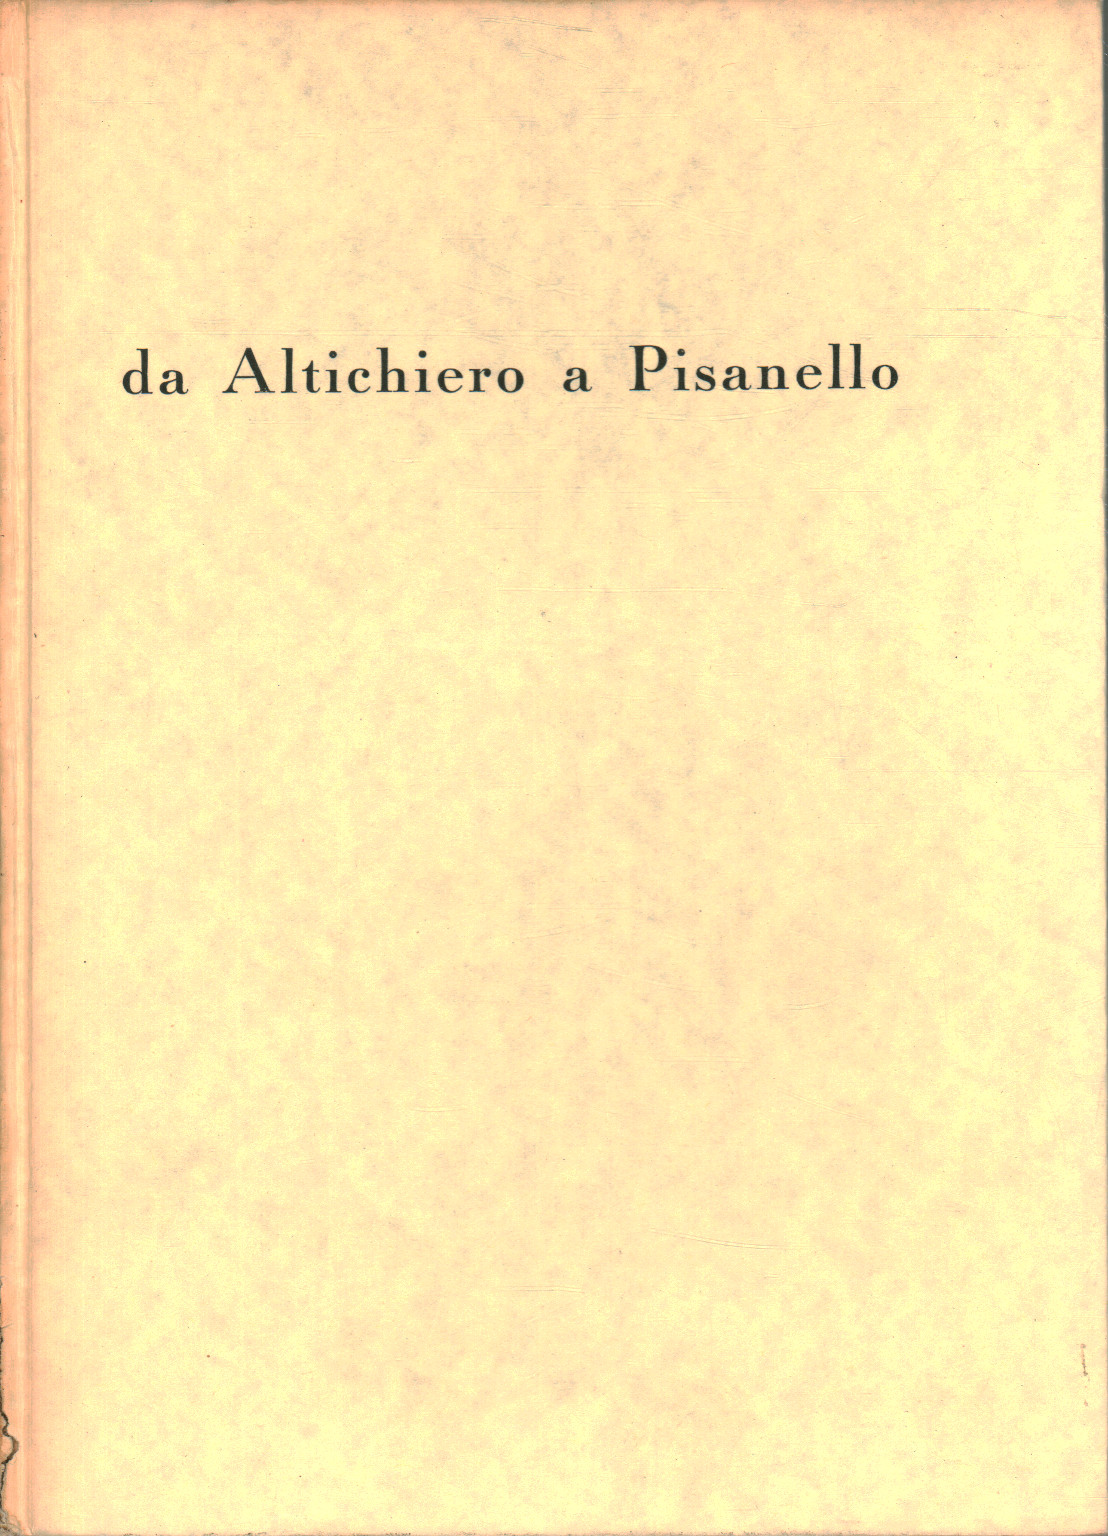 Altichiero Da un Pisanello, s.una.